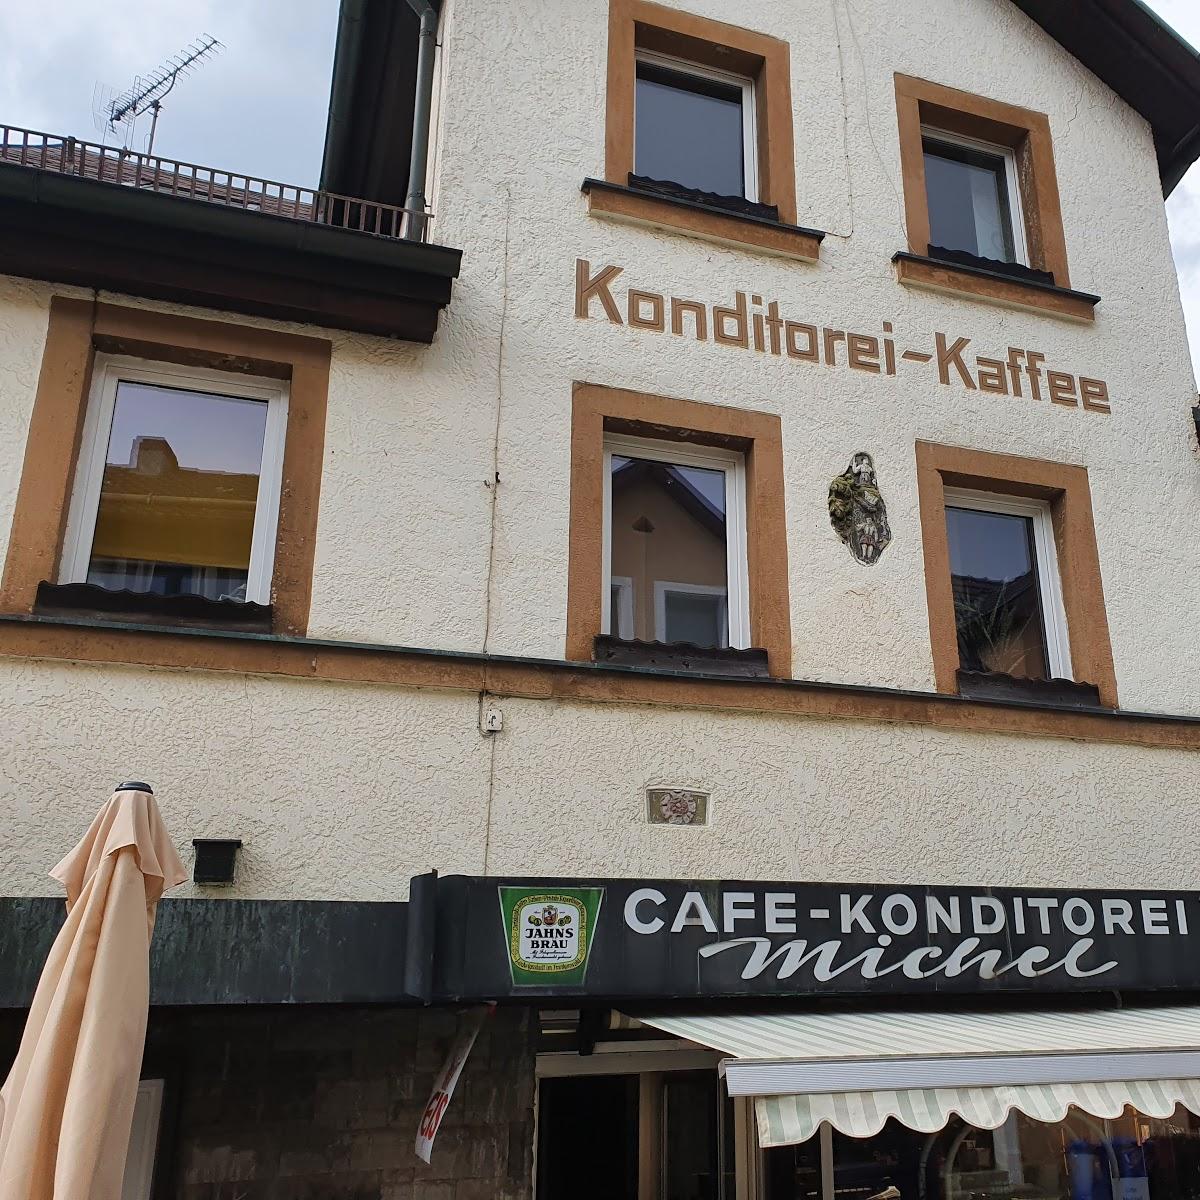 Restaurant "Michel Cafe Konditorei" in Stadtsteinach